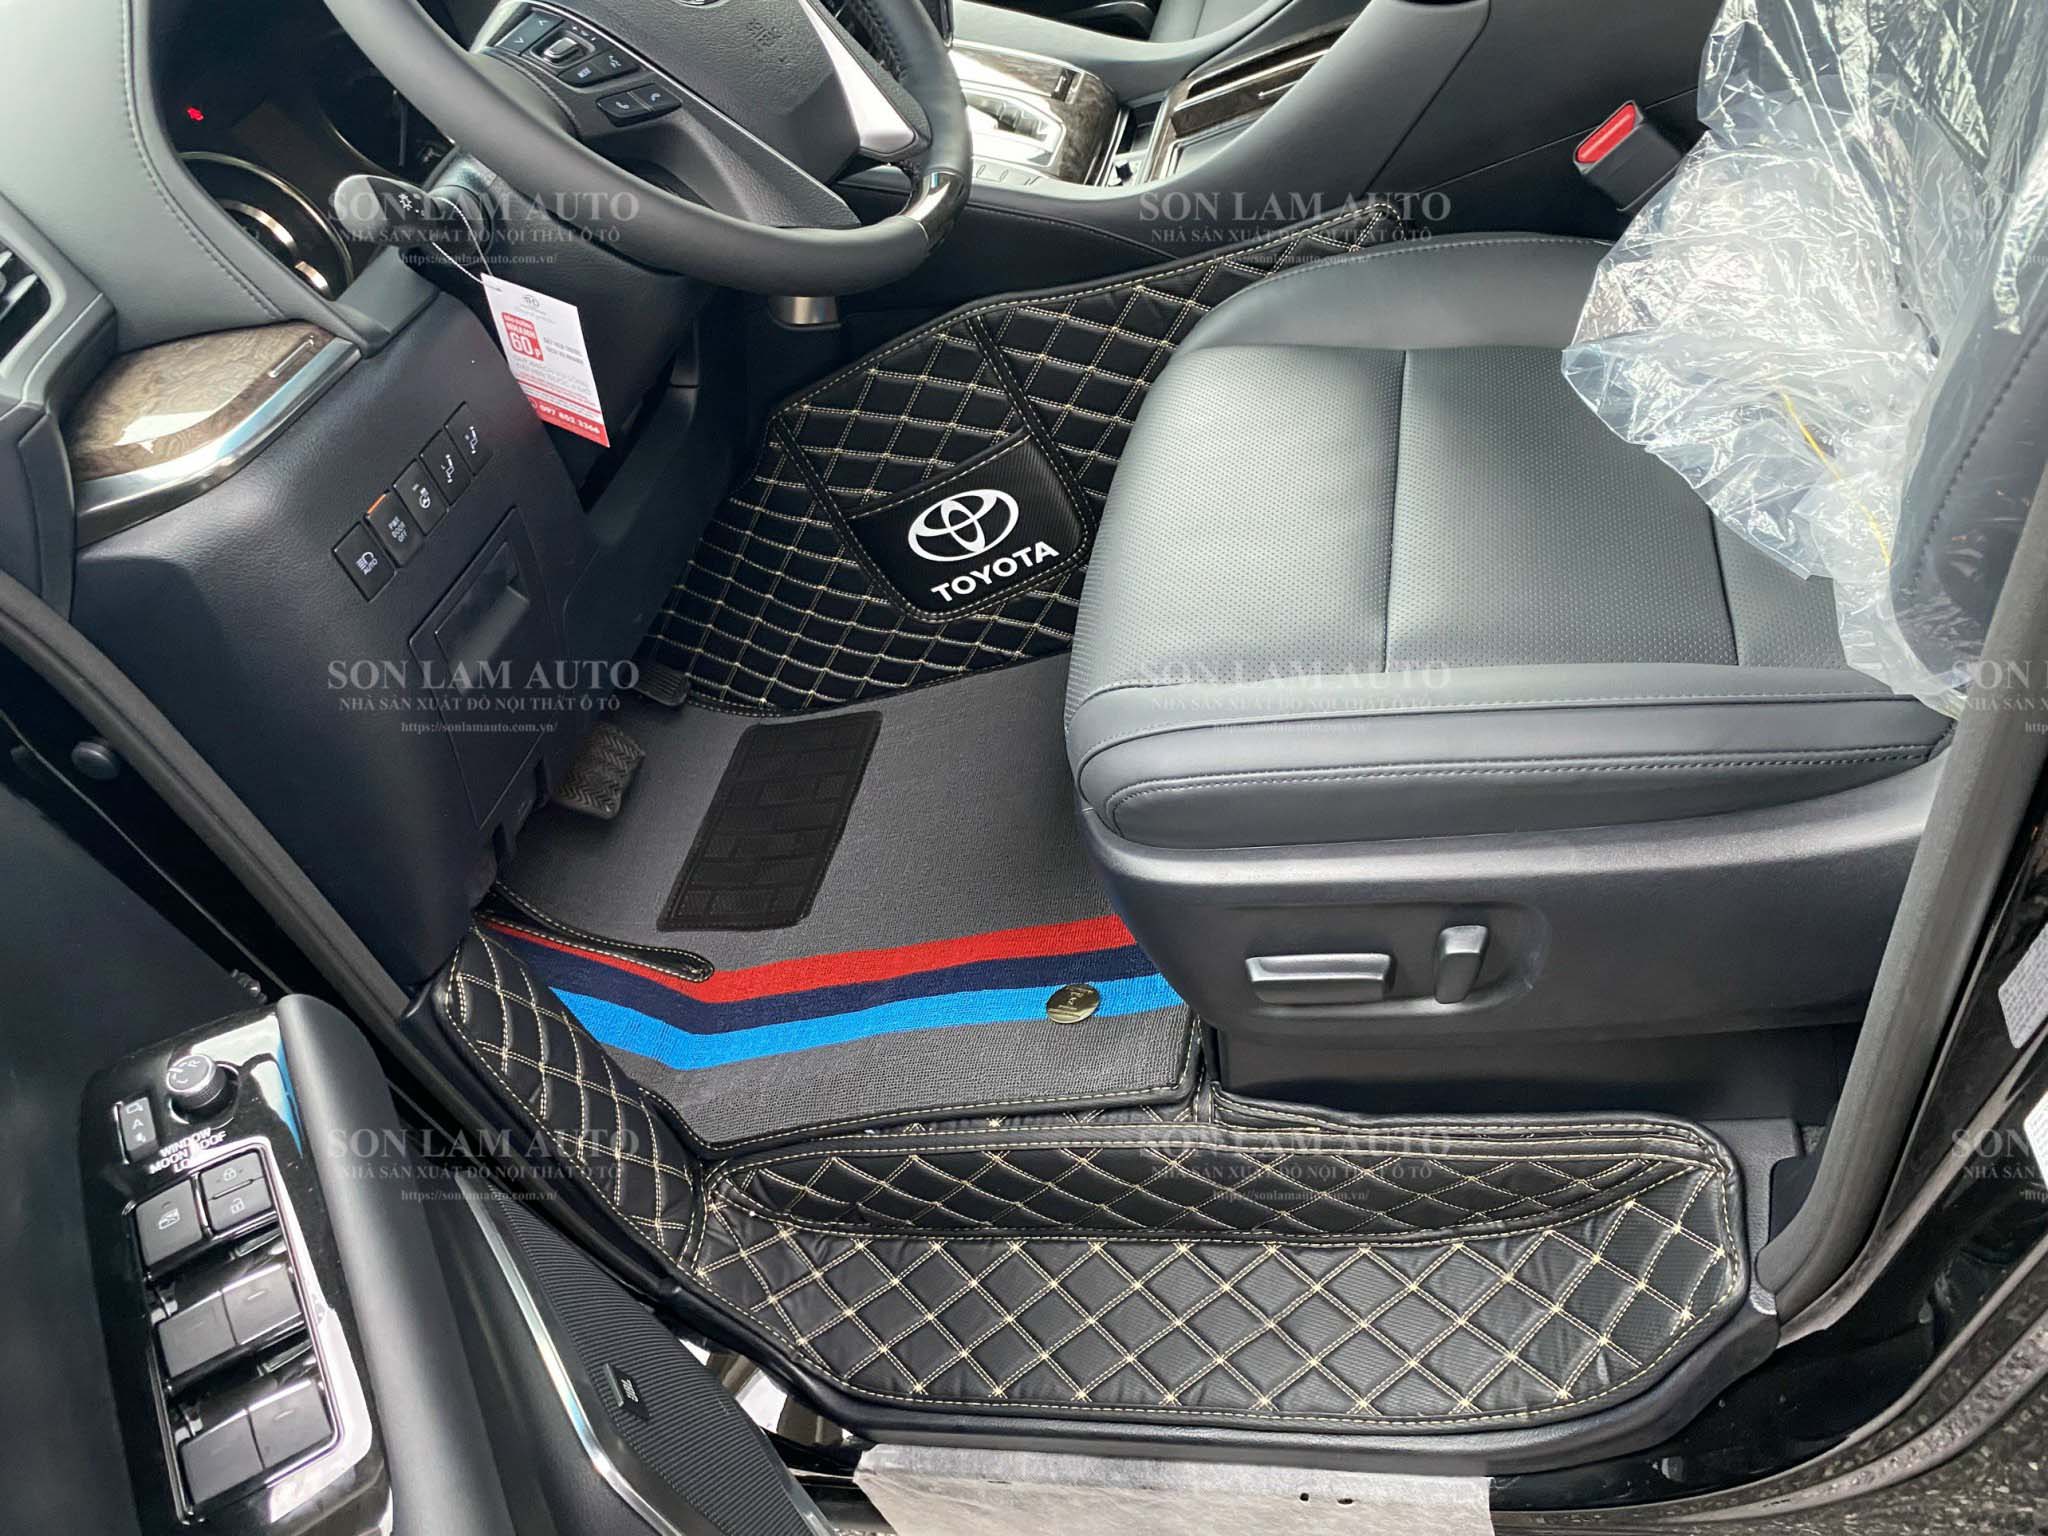 Thảm lót sàn ô tô Toyota Alphard